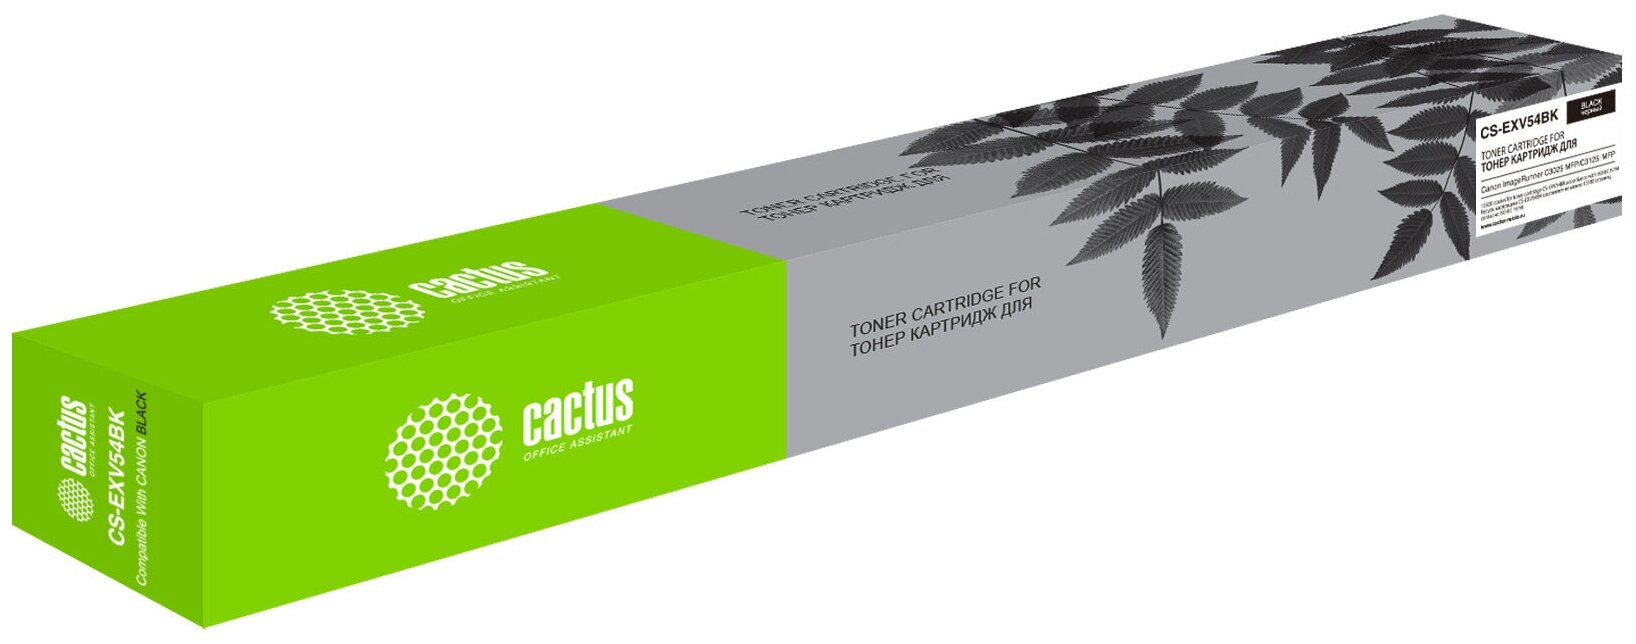 Картридж лазерный Cactus черный (15500стр.) для Canon ImageRunner C3025 MFP/ C3025i MFP - фото №1